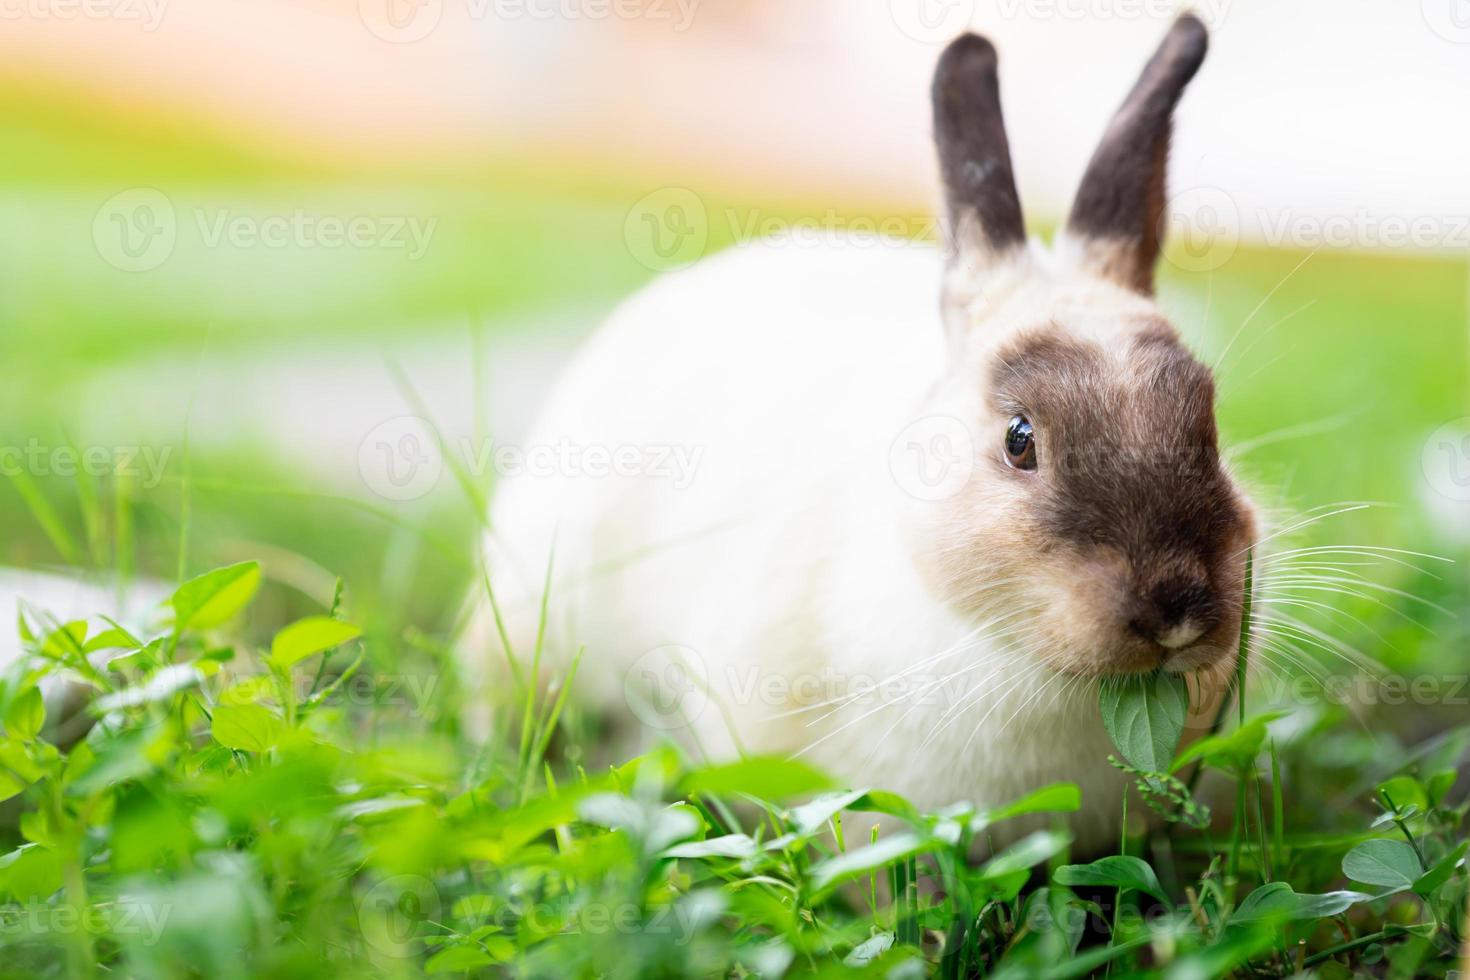 lapin mignon dans le pré frais vert. le lapin mange de délicieuses jeunes feuilles vertes. photo